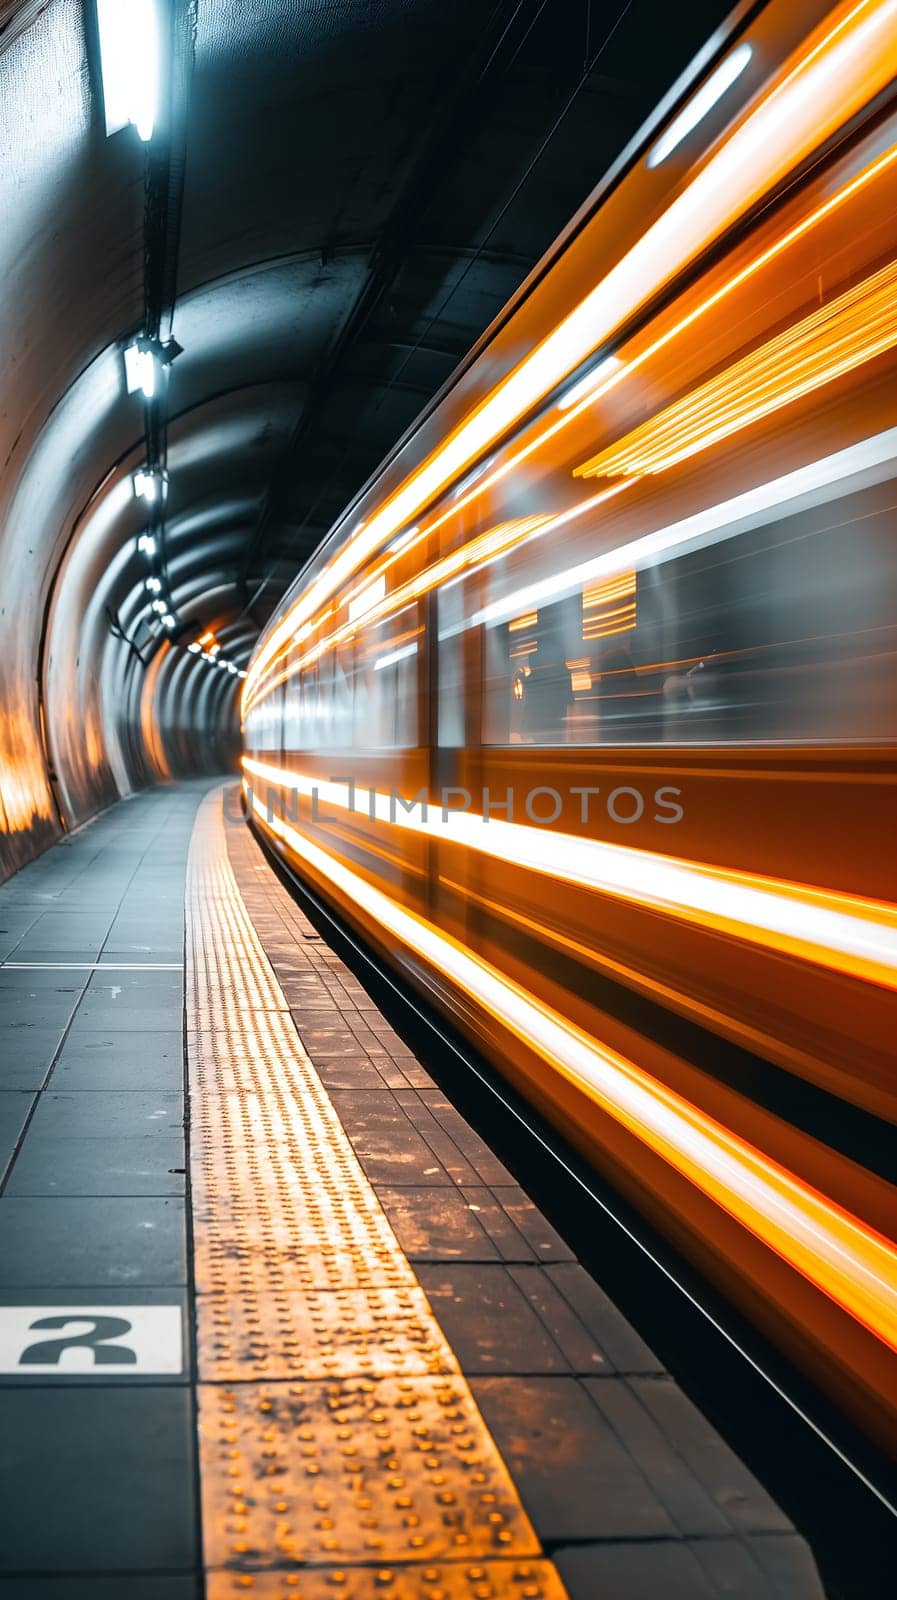 Speeding Train Captured at Underground Station Platform by chrisroll